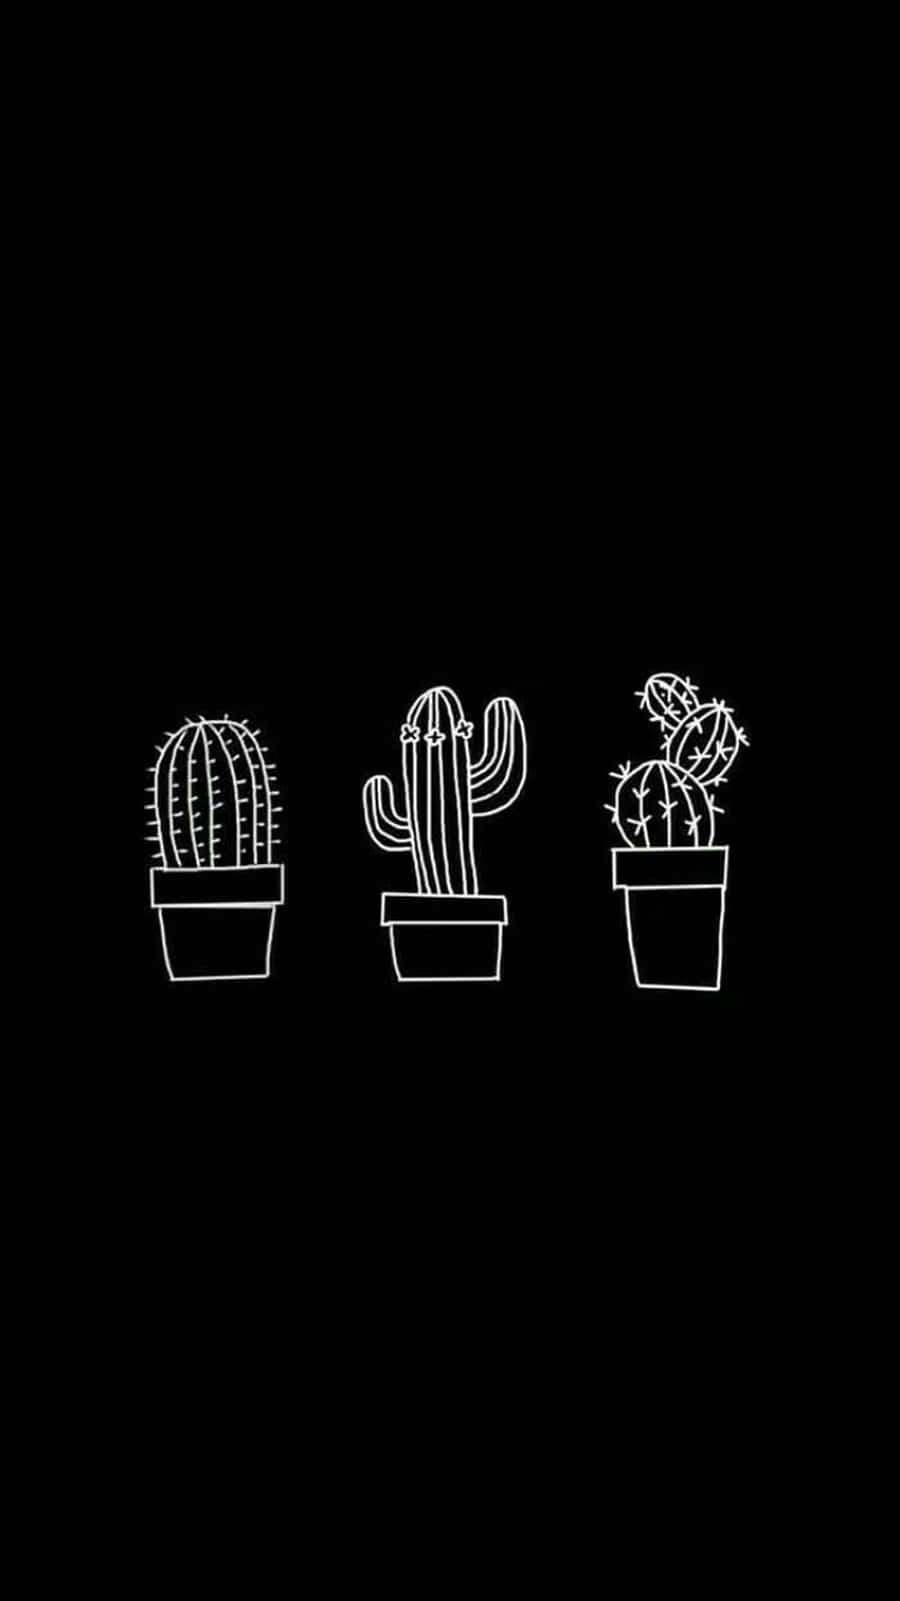 Imagende Un Cactus En Blanco Y Negro Genial